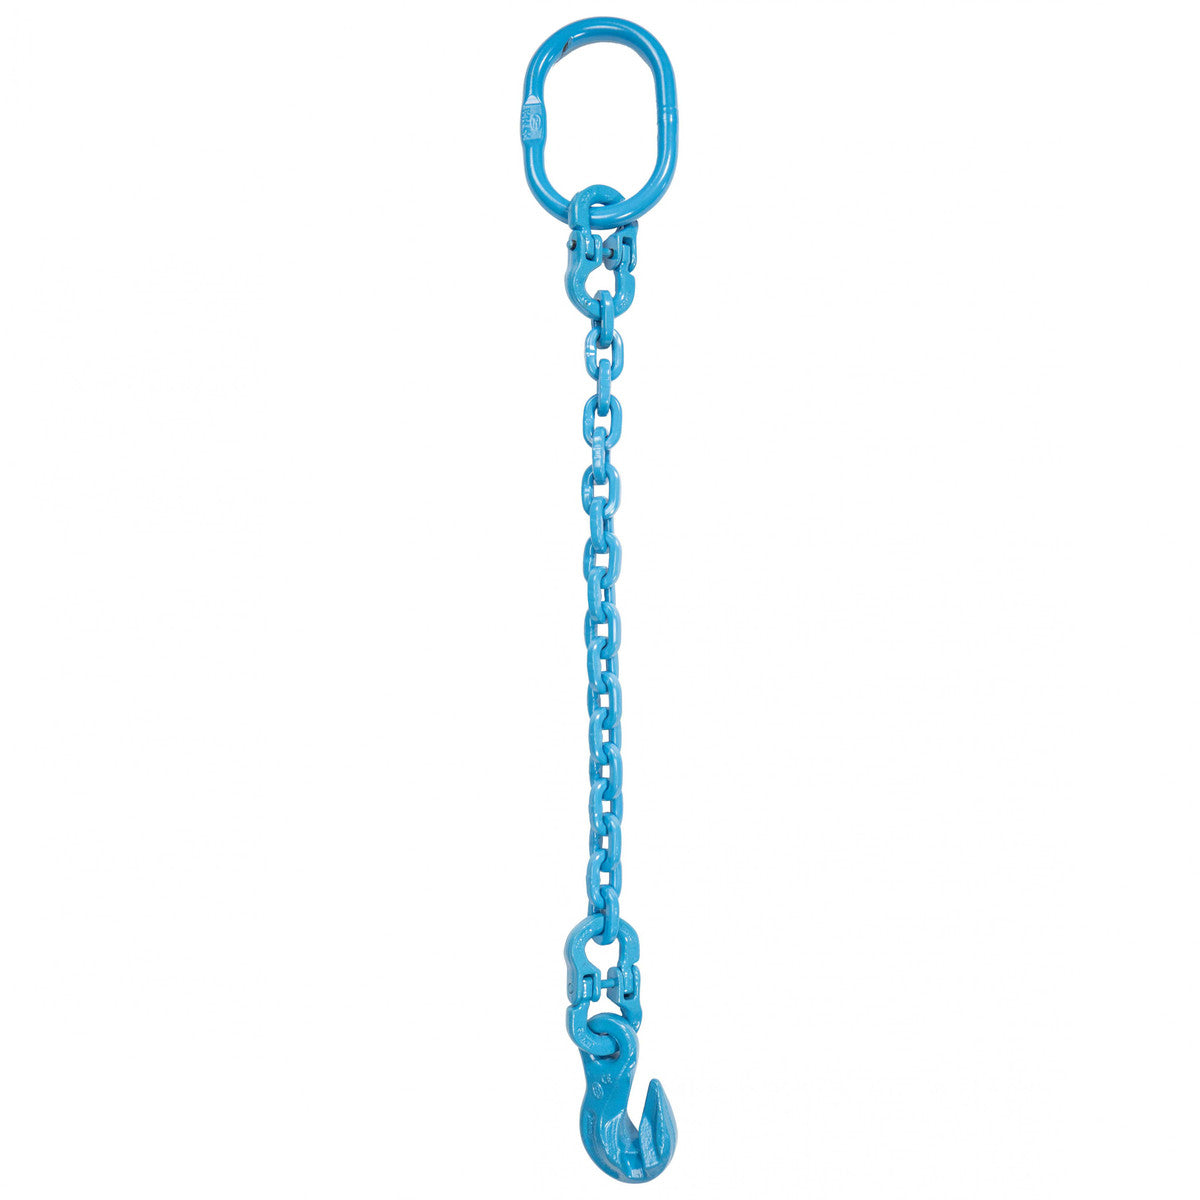 9/32" x 14' - Pewag Single Leg Chain Sling w/ Grab Hook - Grade 120